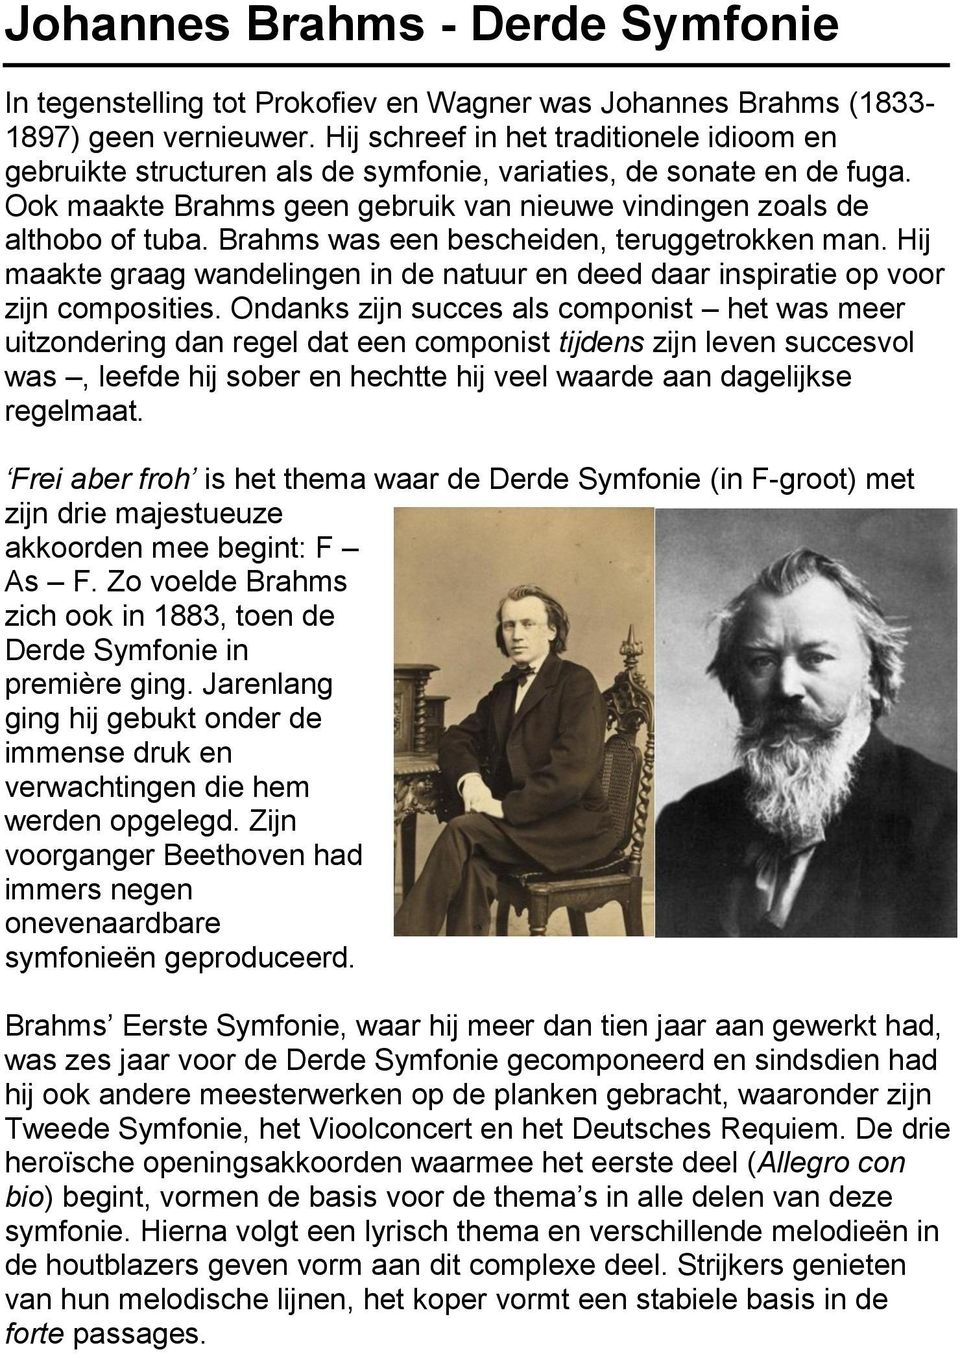 Brahms was een bescheiden, teruggetrokken man. Hij maakte graag wandelingen in de natuur en deed daar inspiratie op voor zijn composities.